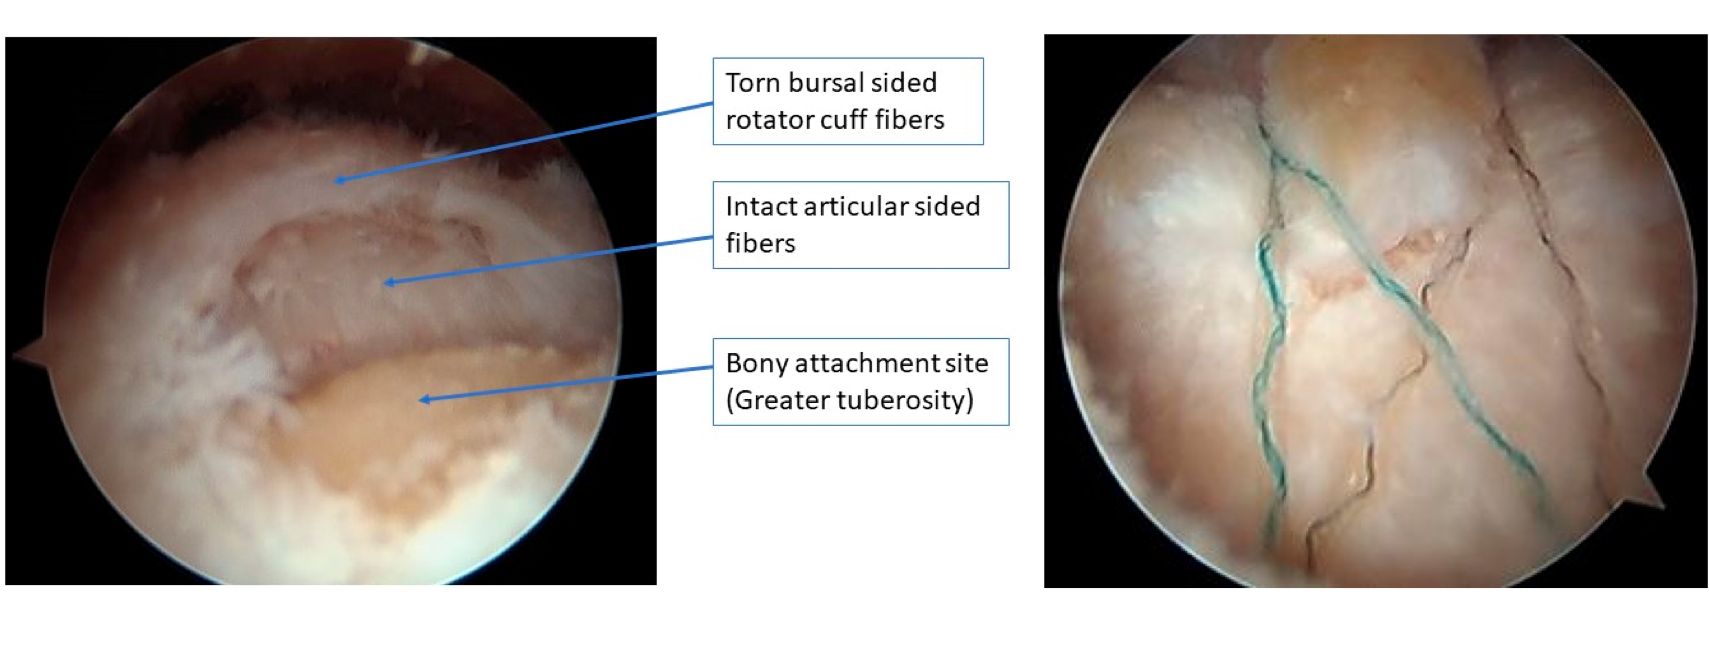 arthroscopic-images-of-a-partial-bursal-sided-rotator-cuff-tear.jpg